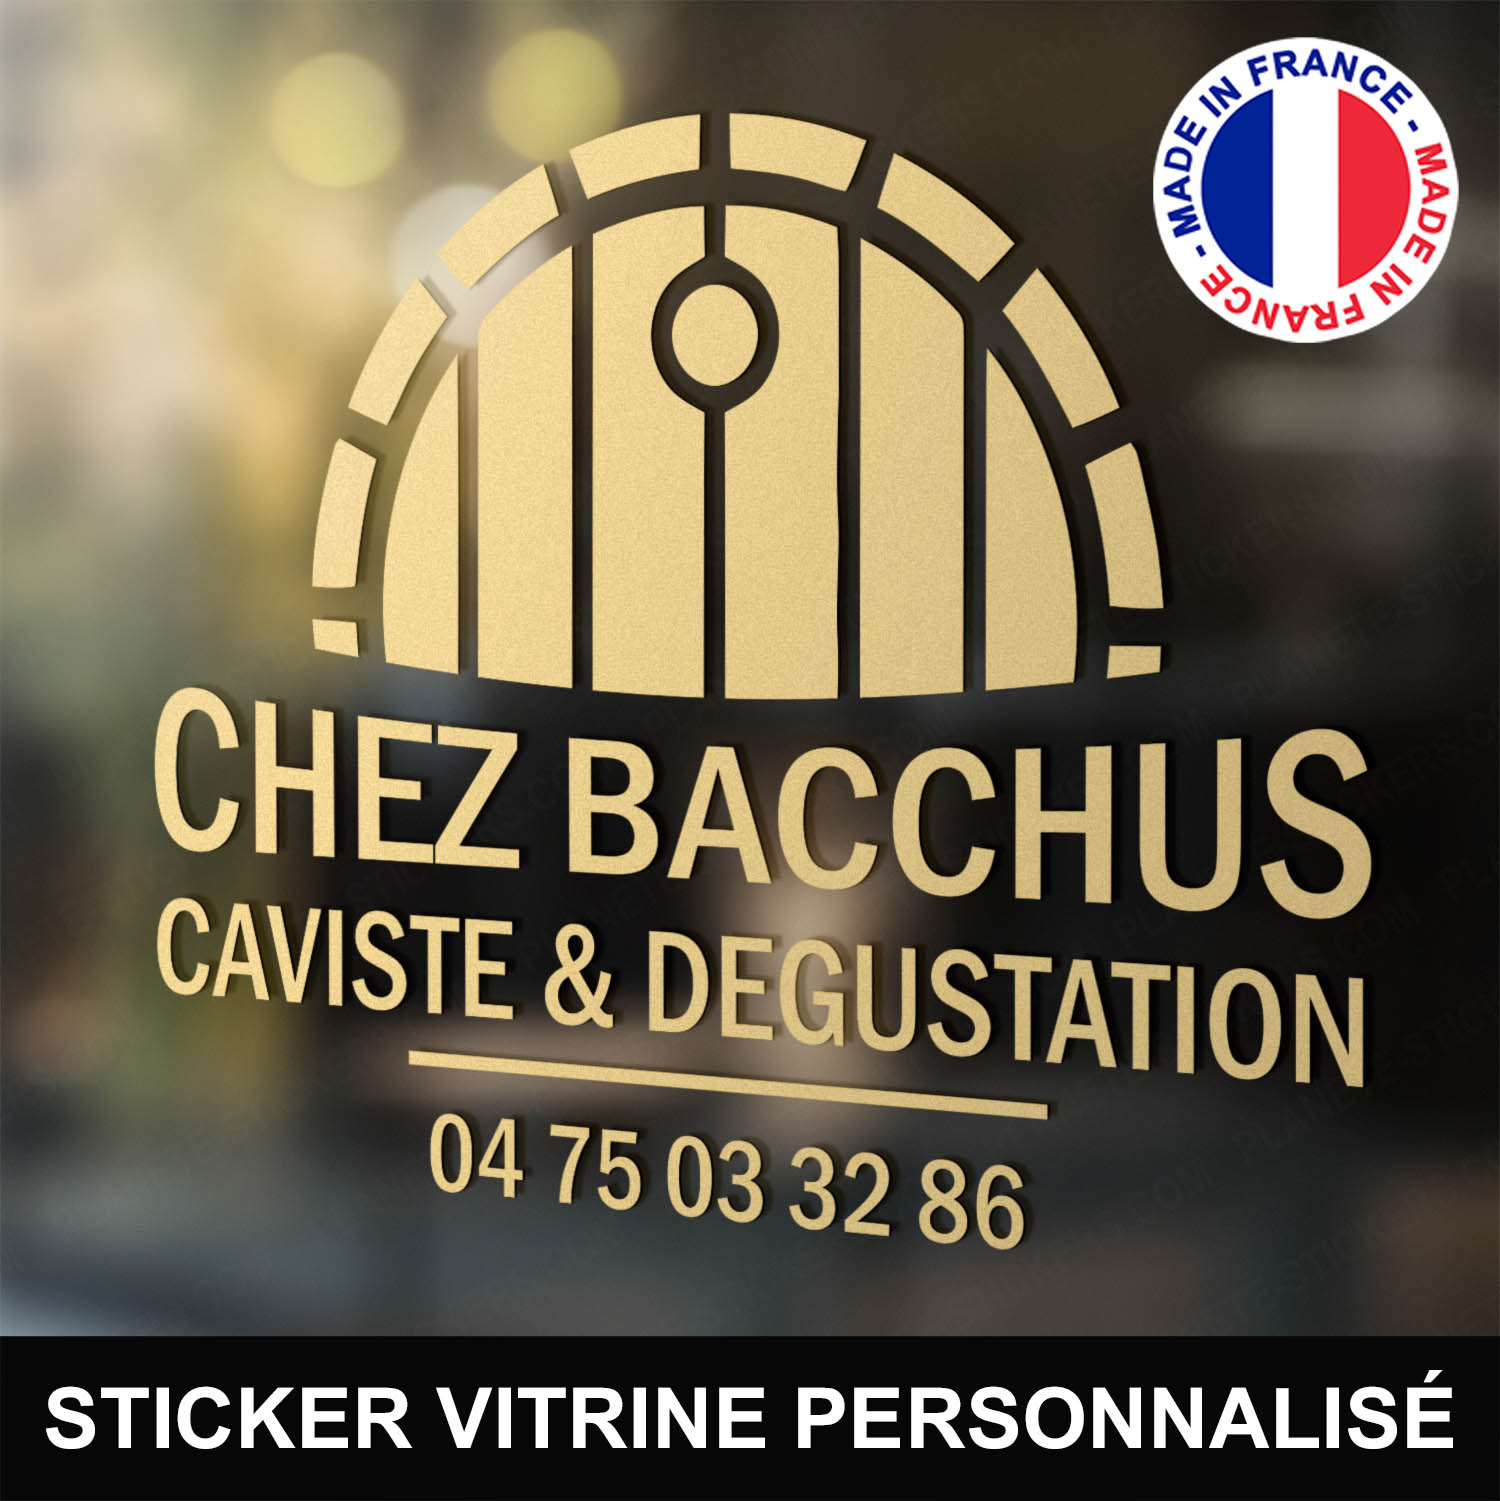 ref2cavistevitrine-stickers-caviste-vitrine-sticker-personnalisé-autocollant-vin-boutique-pro-degustation-tonneau-fut-professionnel